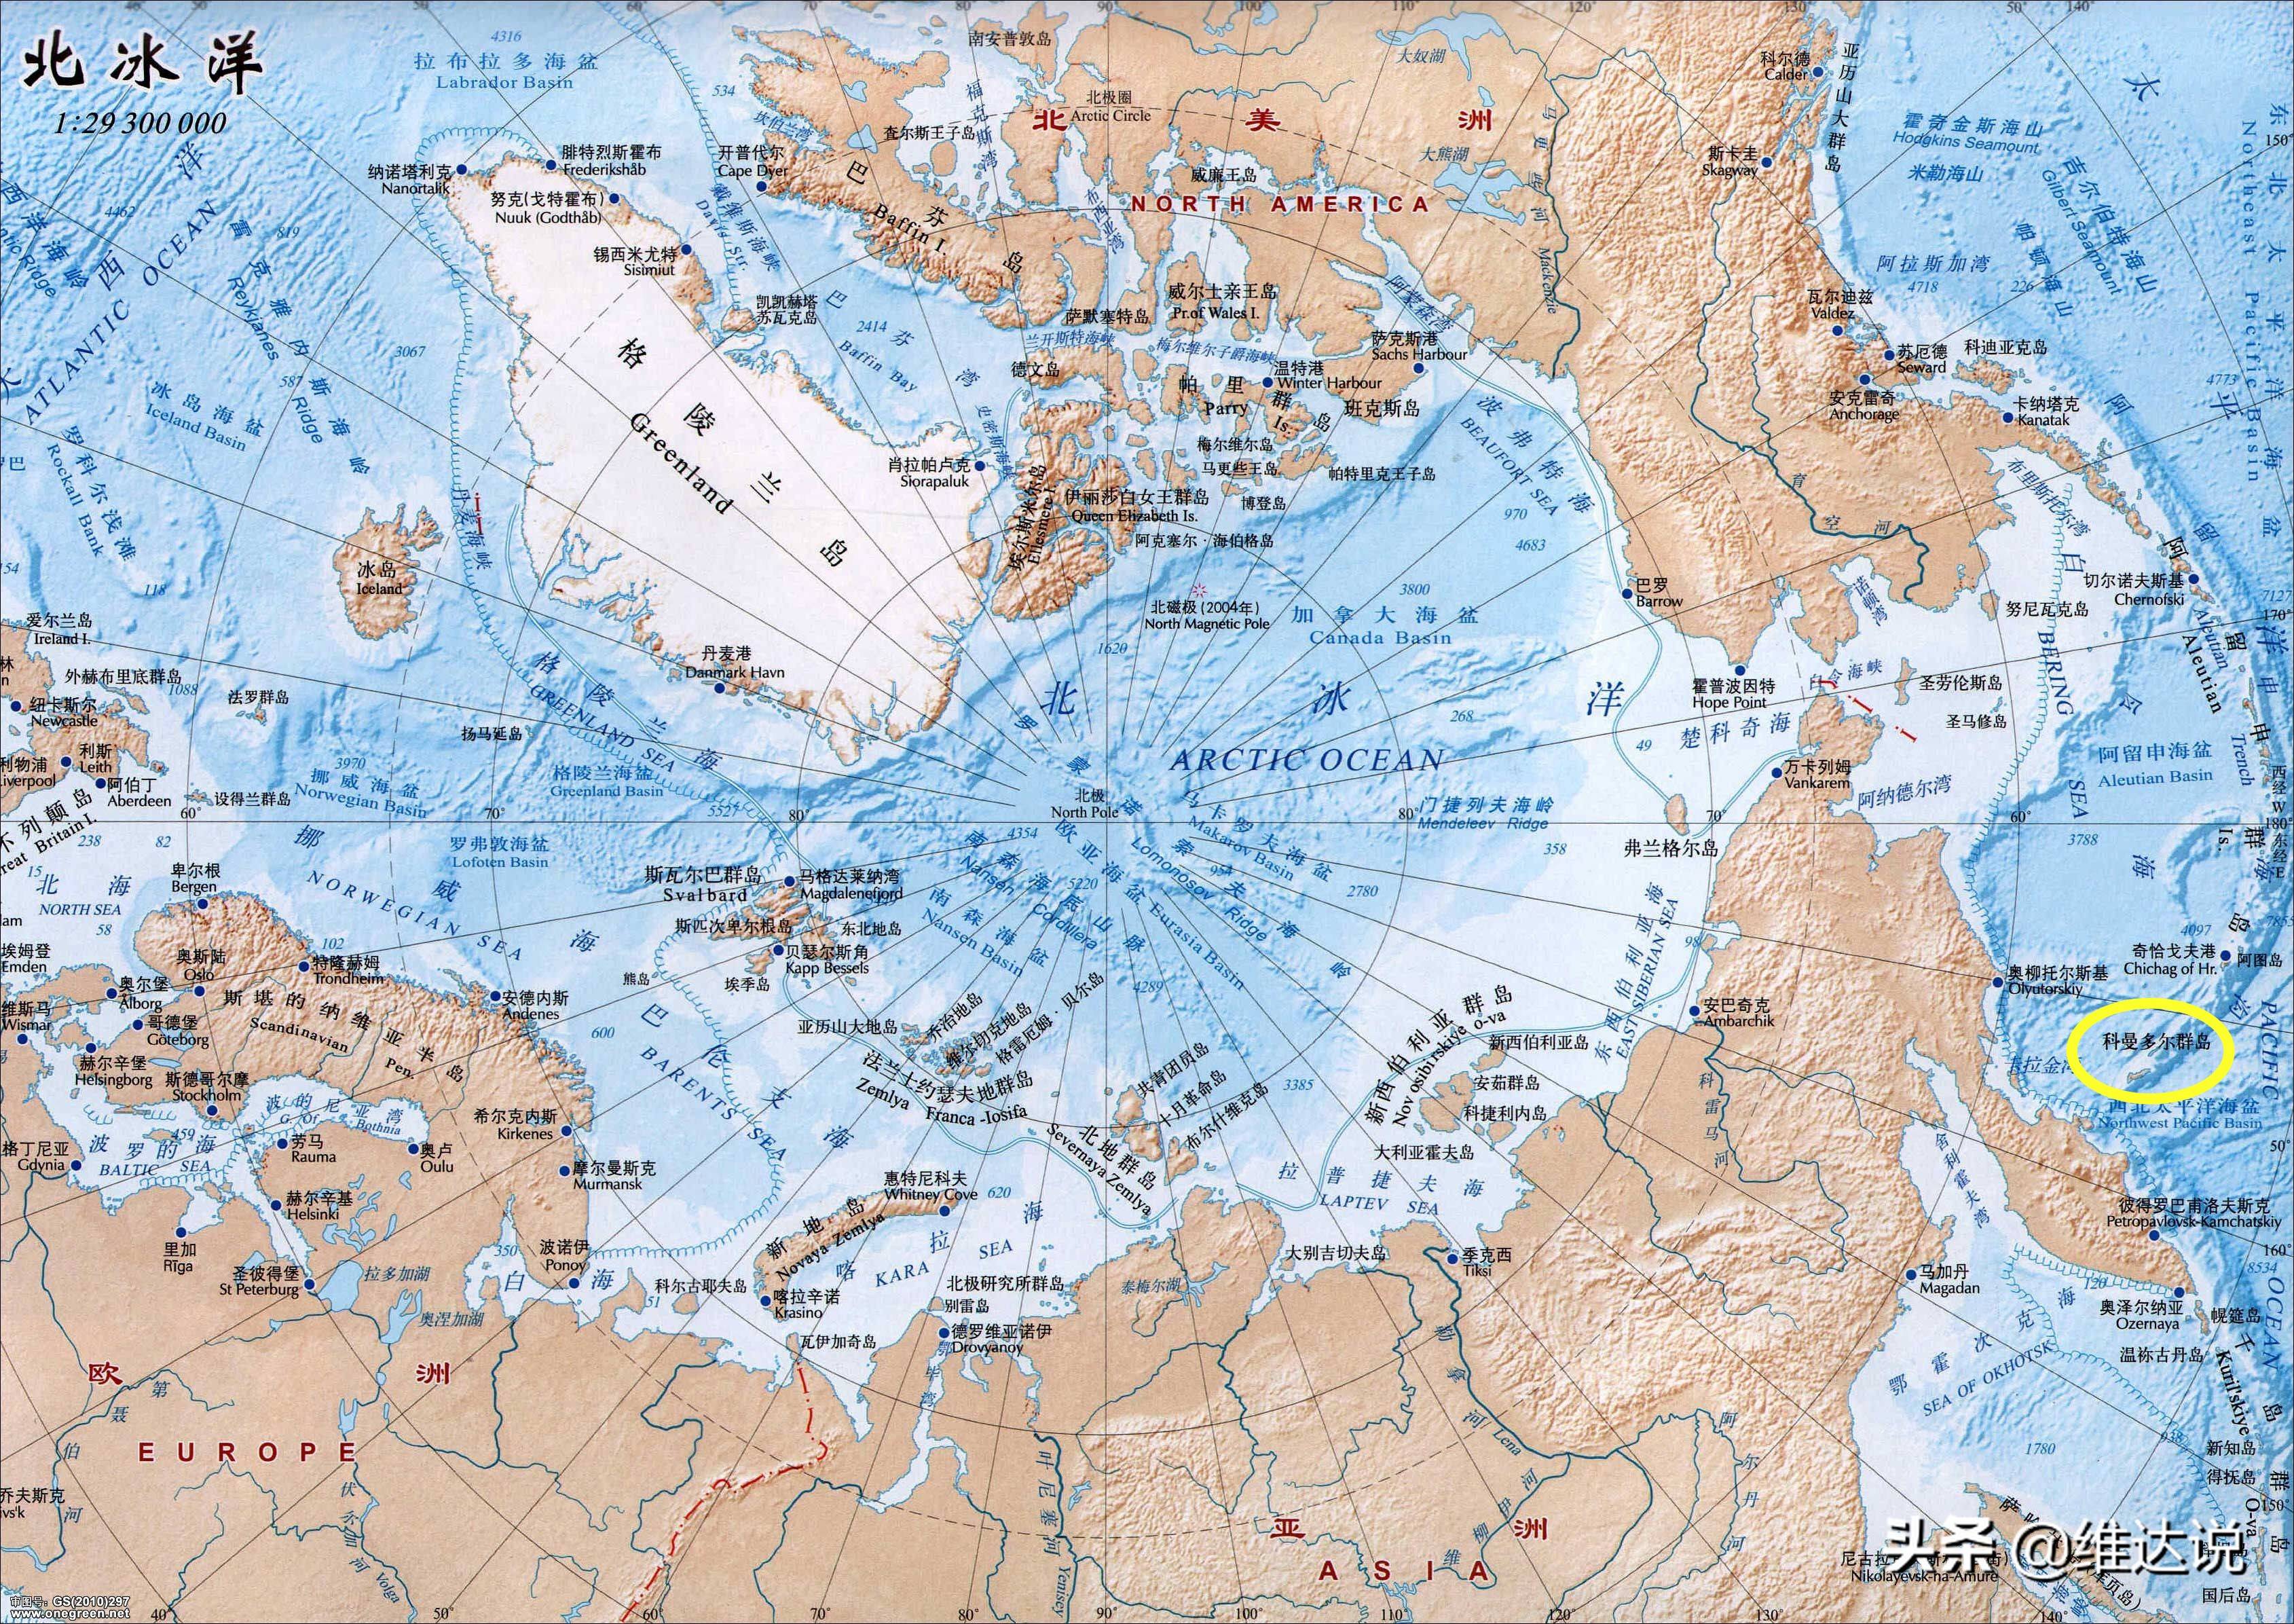 科曼多尔群岛白令海的出海口俄罗斯掌控北极航道的交通隘口